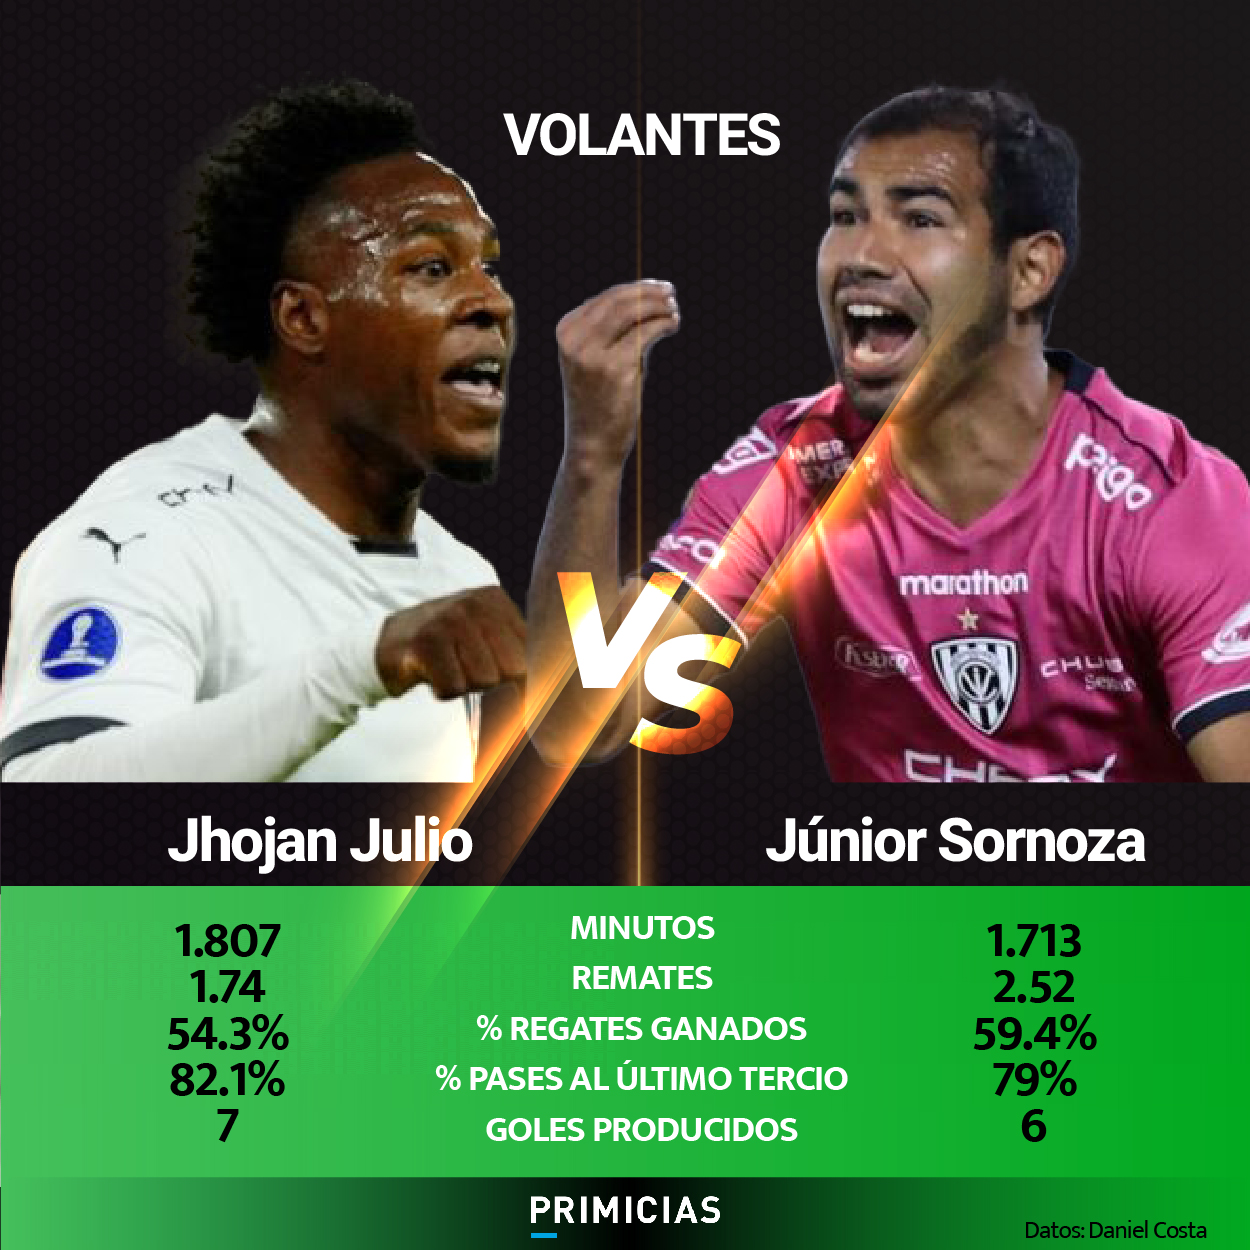 Jhojan Julio vs. Junior Sornoza